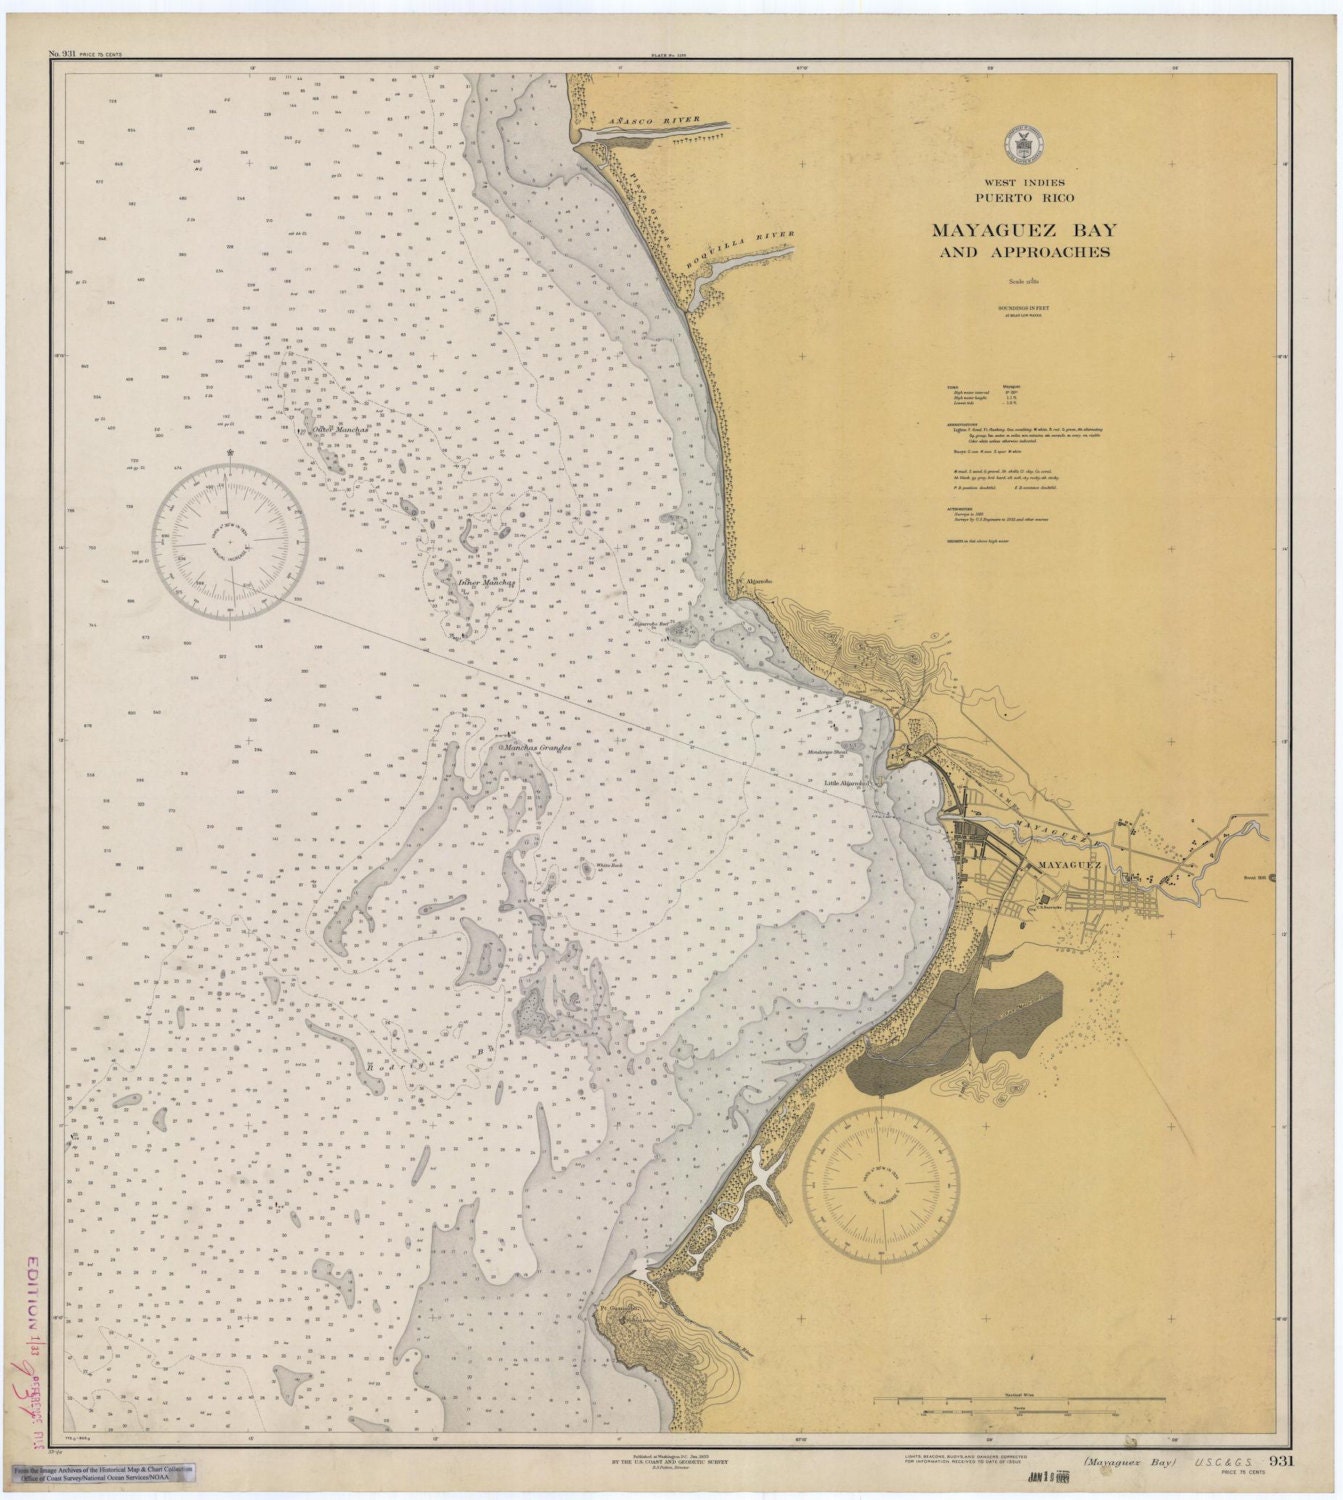 Puerto Rico Map Mayaguez Bay Historical Chart 1933